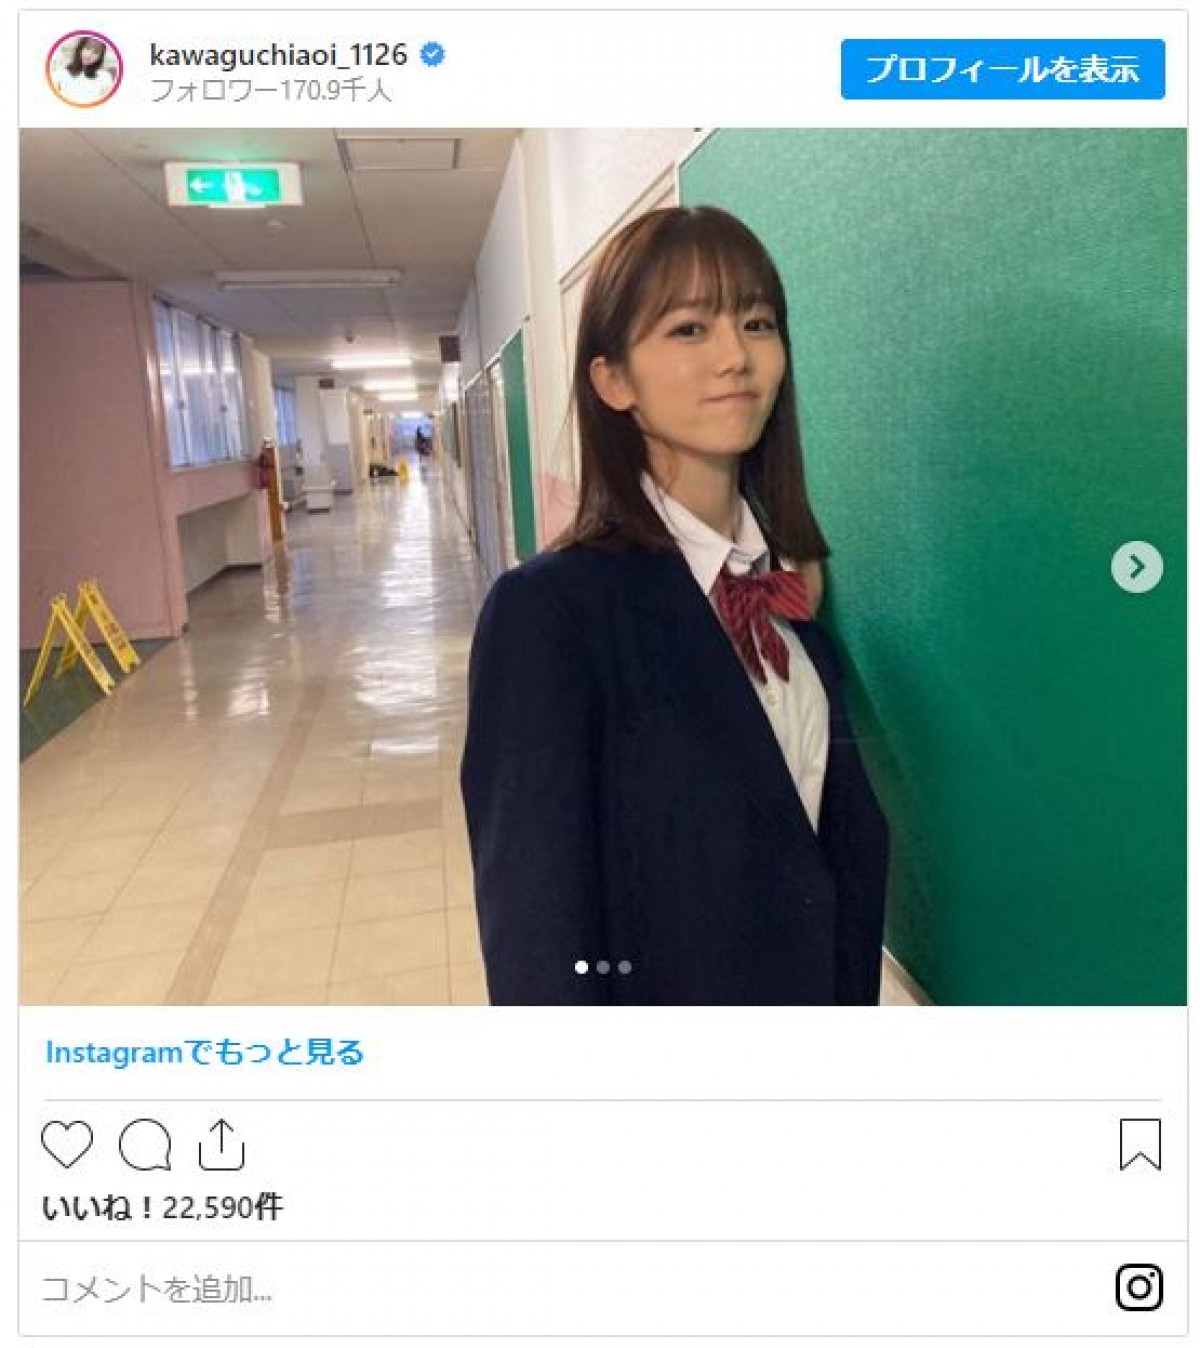 『ボンビーガール』川口葵、キュートな制服姿 「めちゃめちゃ可愛い」と反響